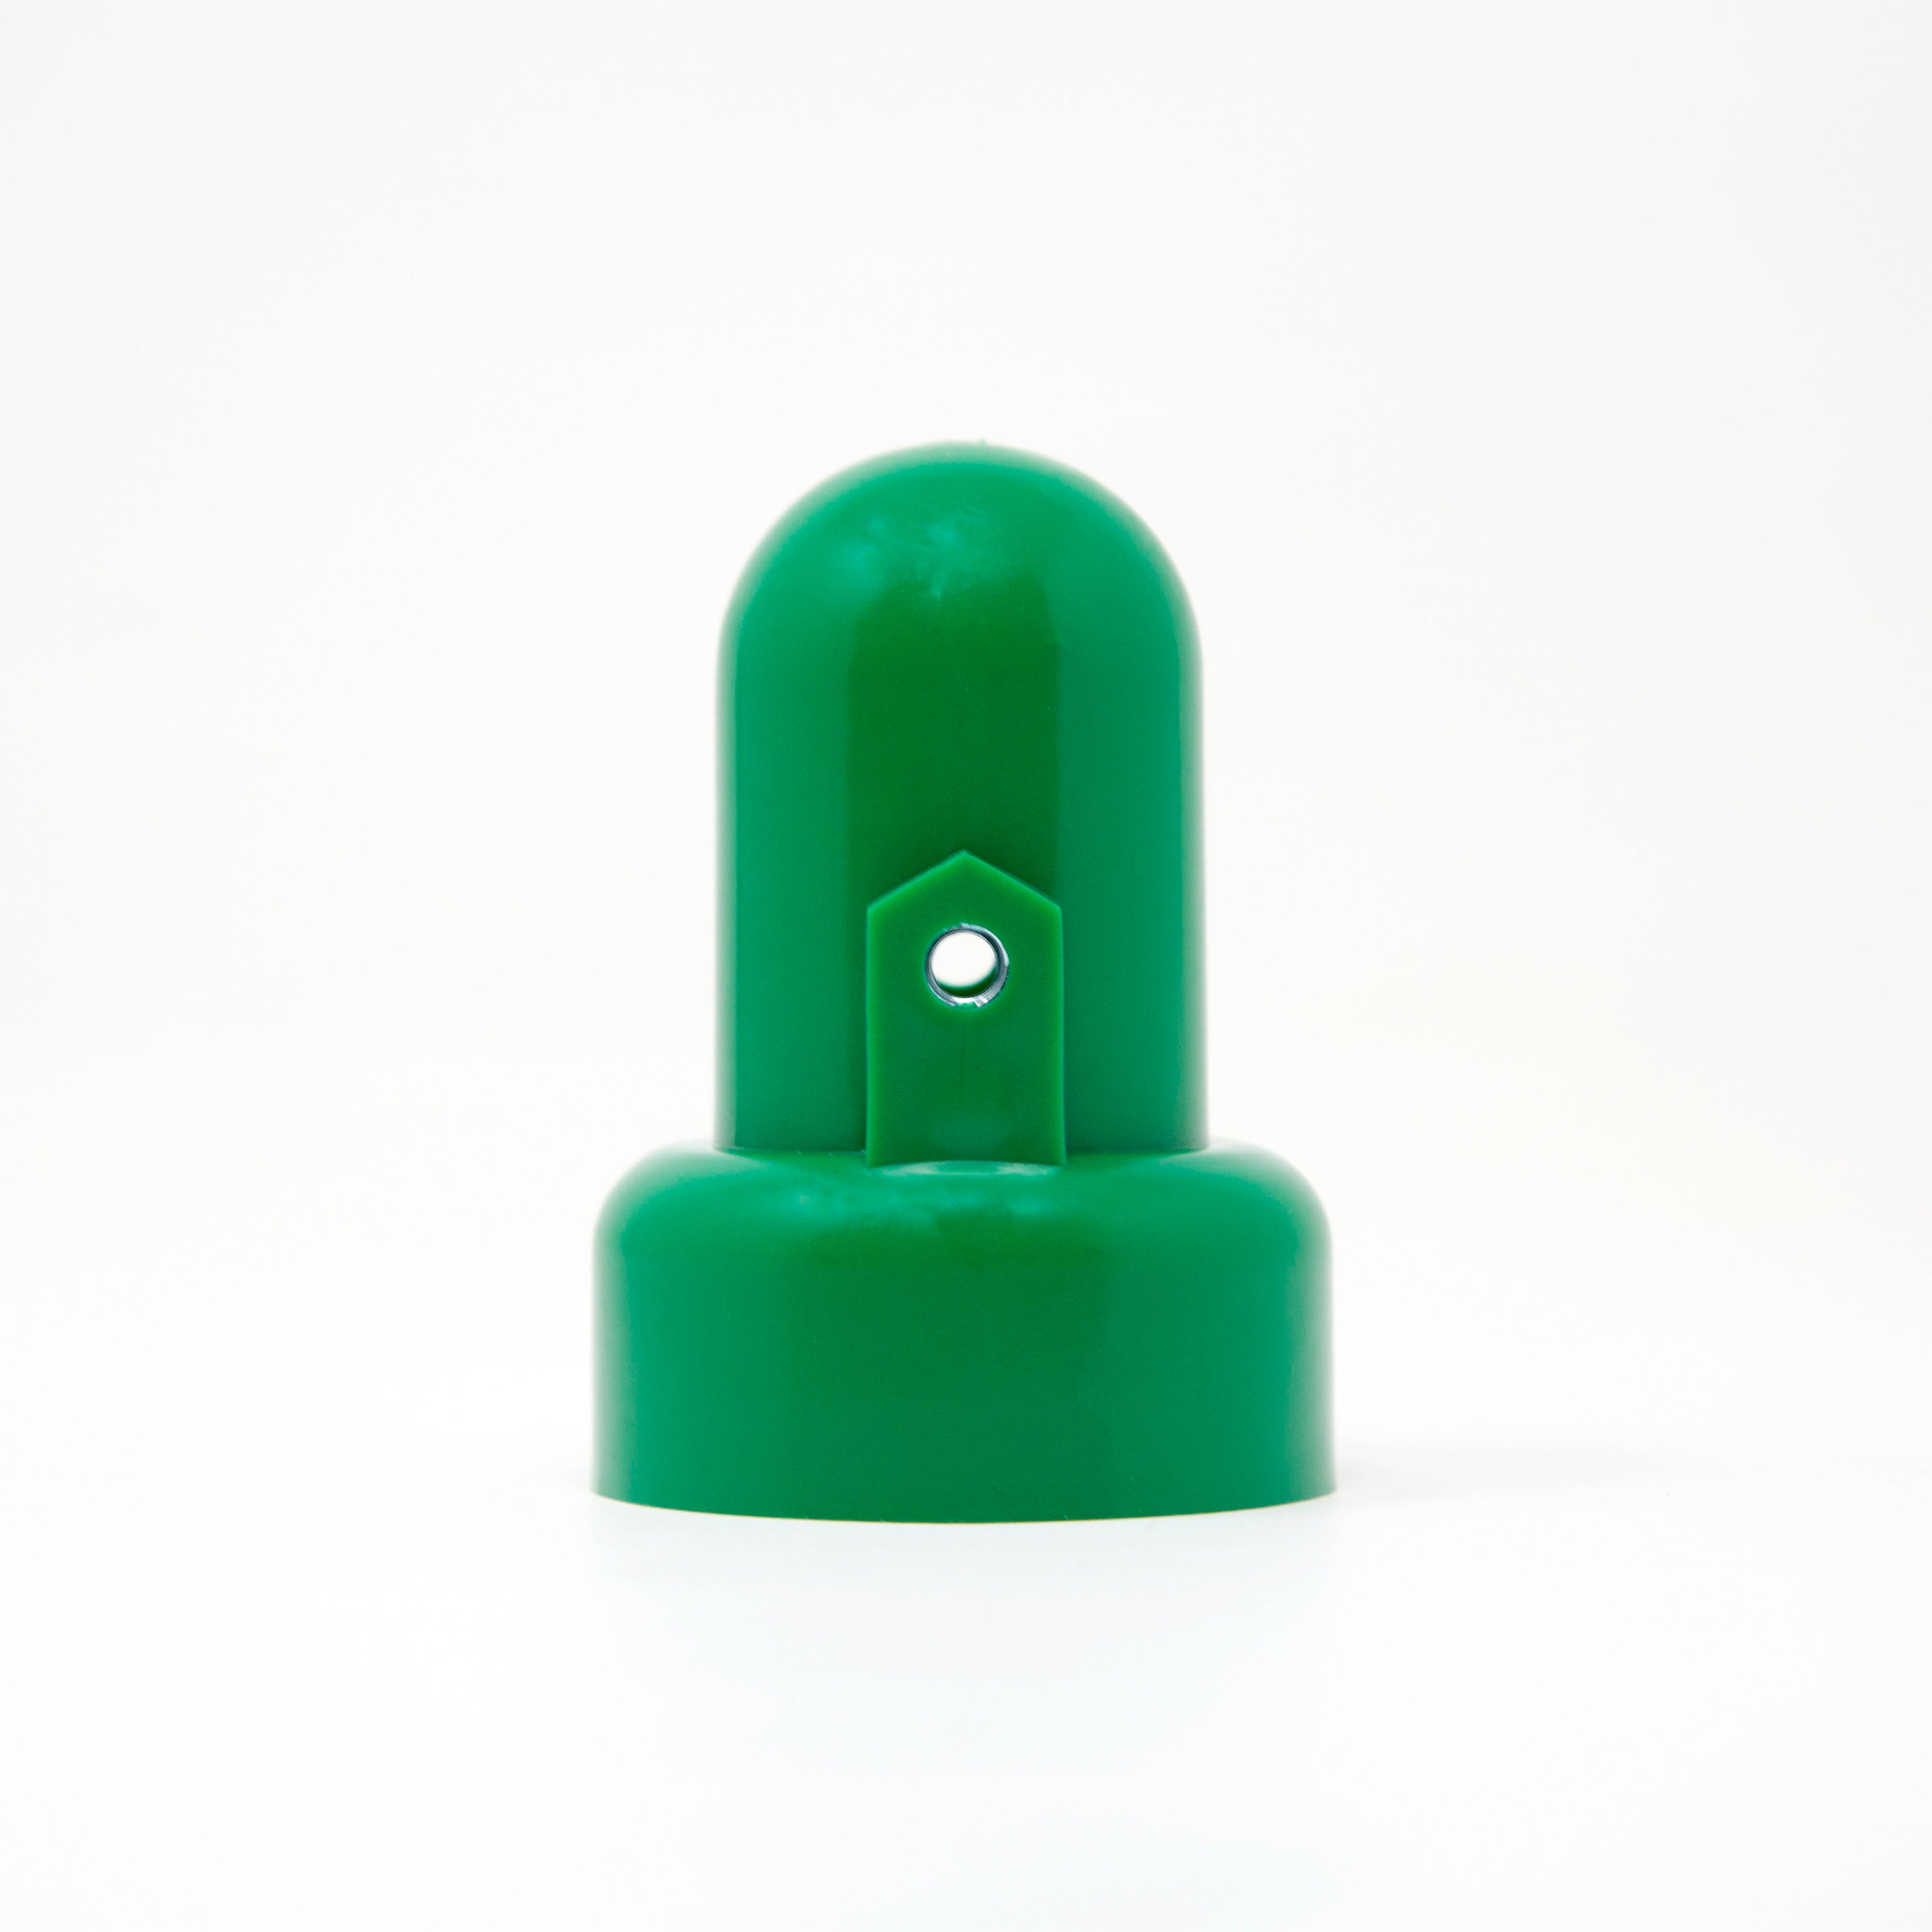 Pole Cap - Small Bright Green - Qty 4